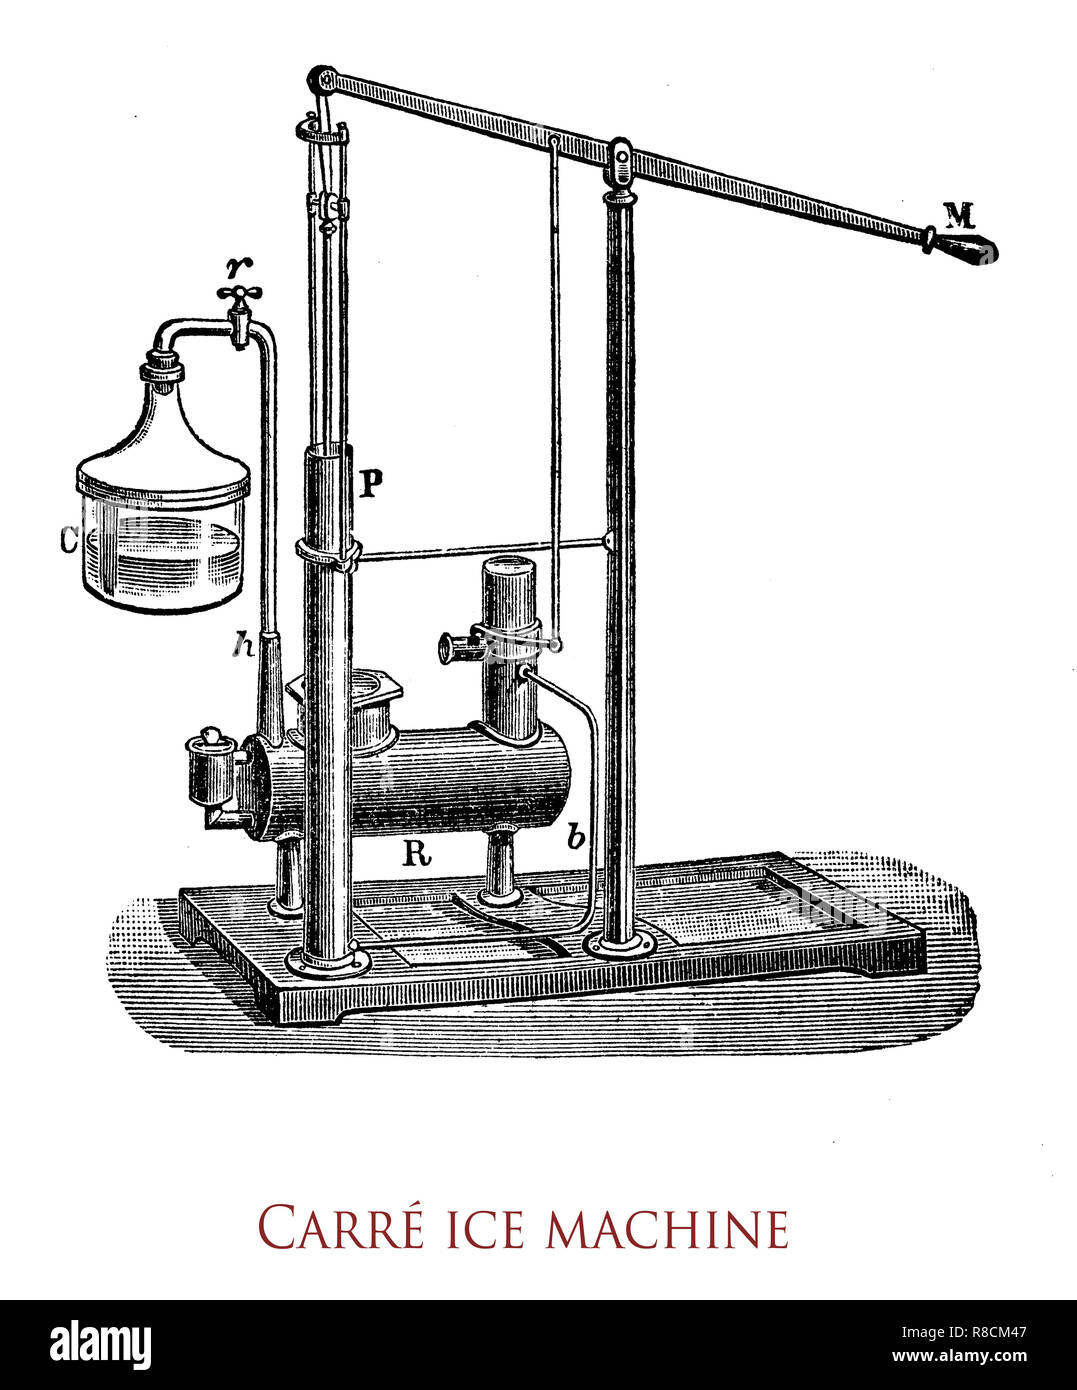 Edmond Carré (1833 - 1894) entwickelt die erste Absorptionskältemaschine  Eismaschine, mit Wasser und Schwefelsäure Stockfotografie - Alamy